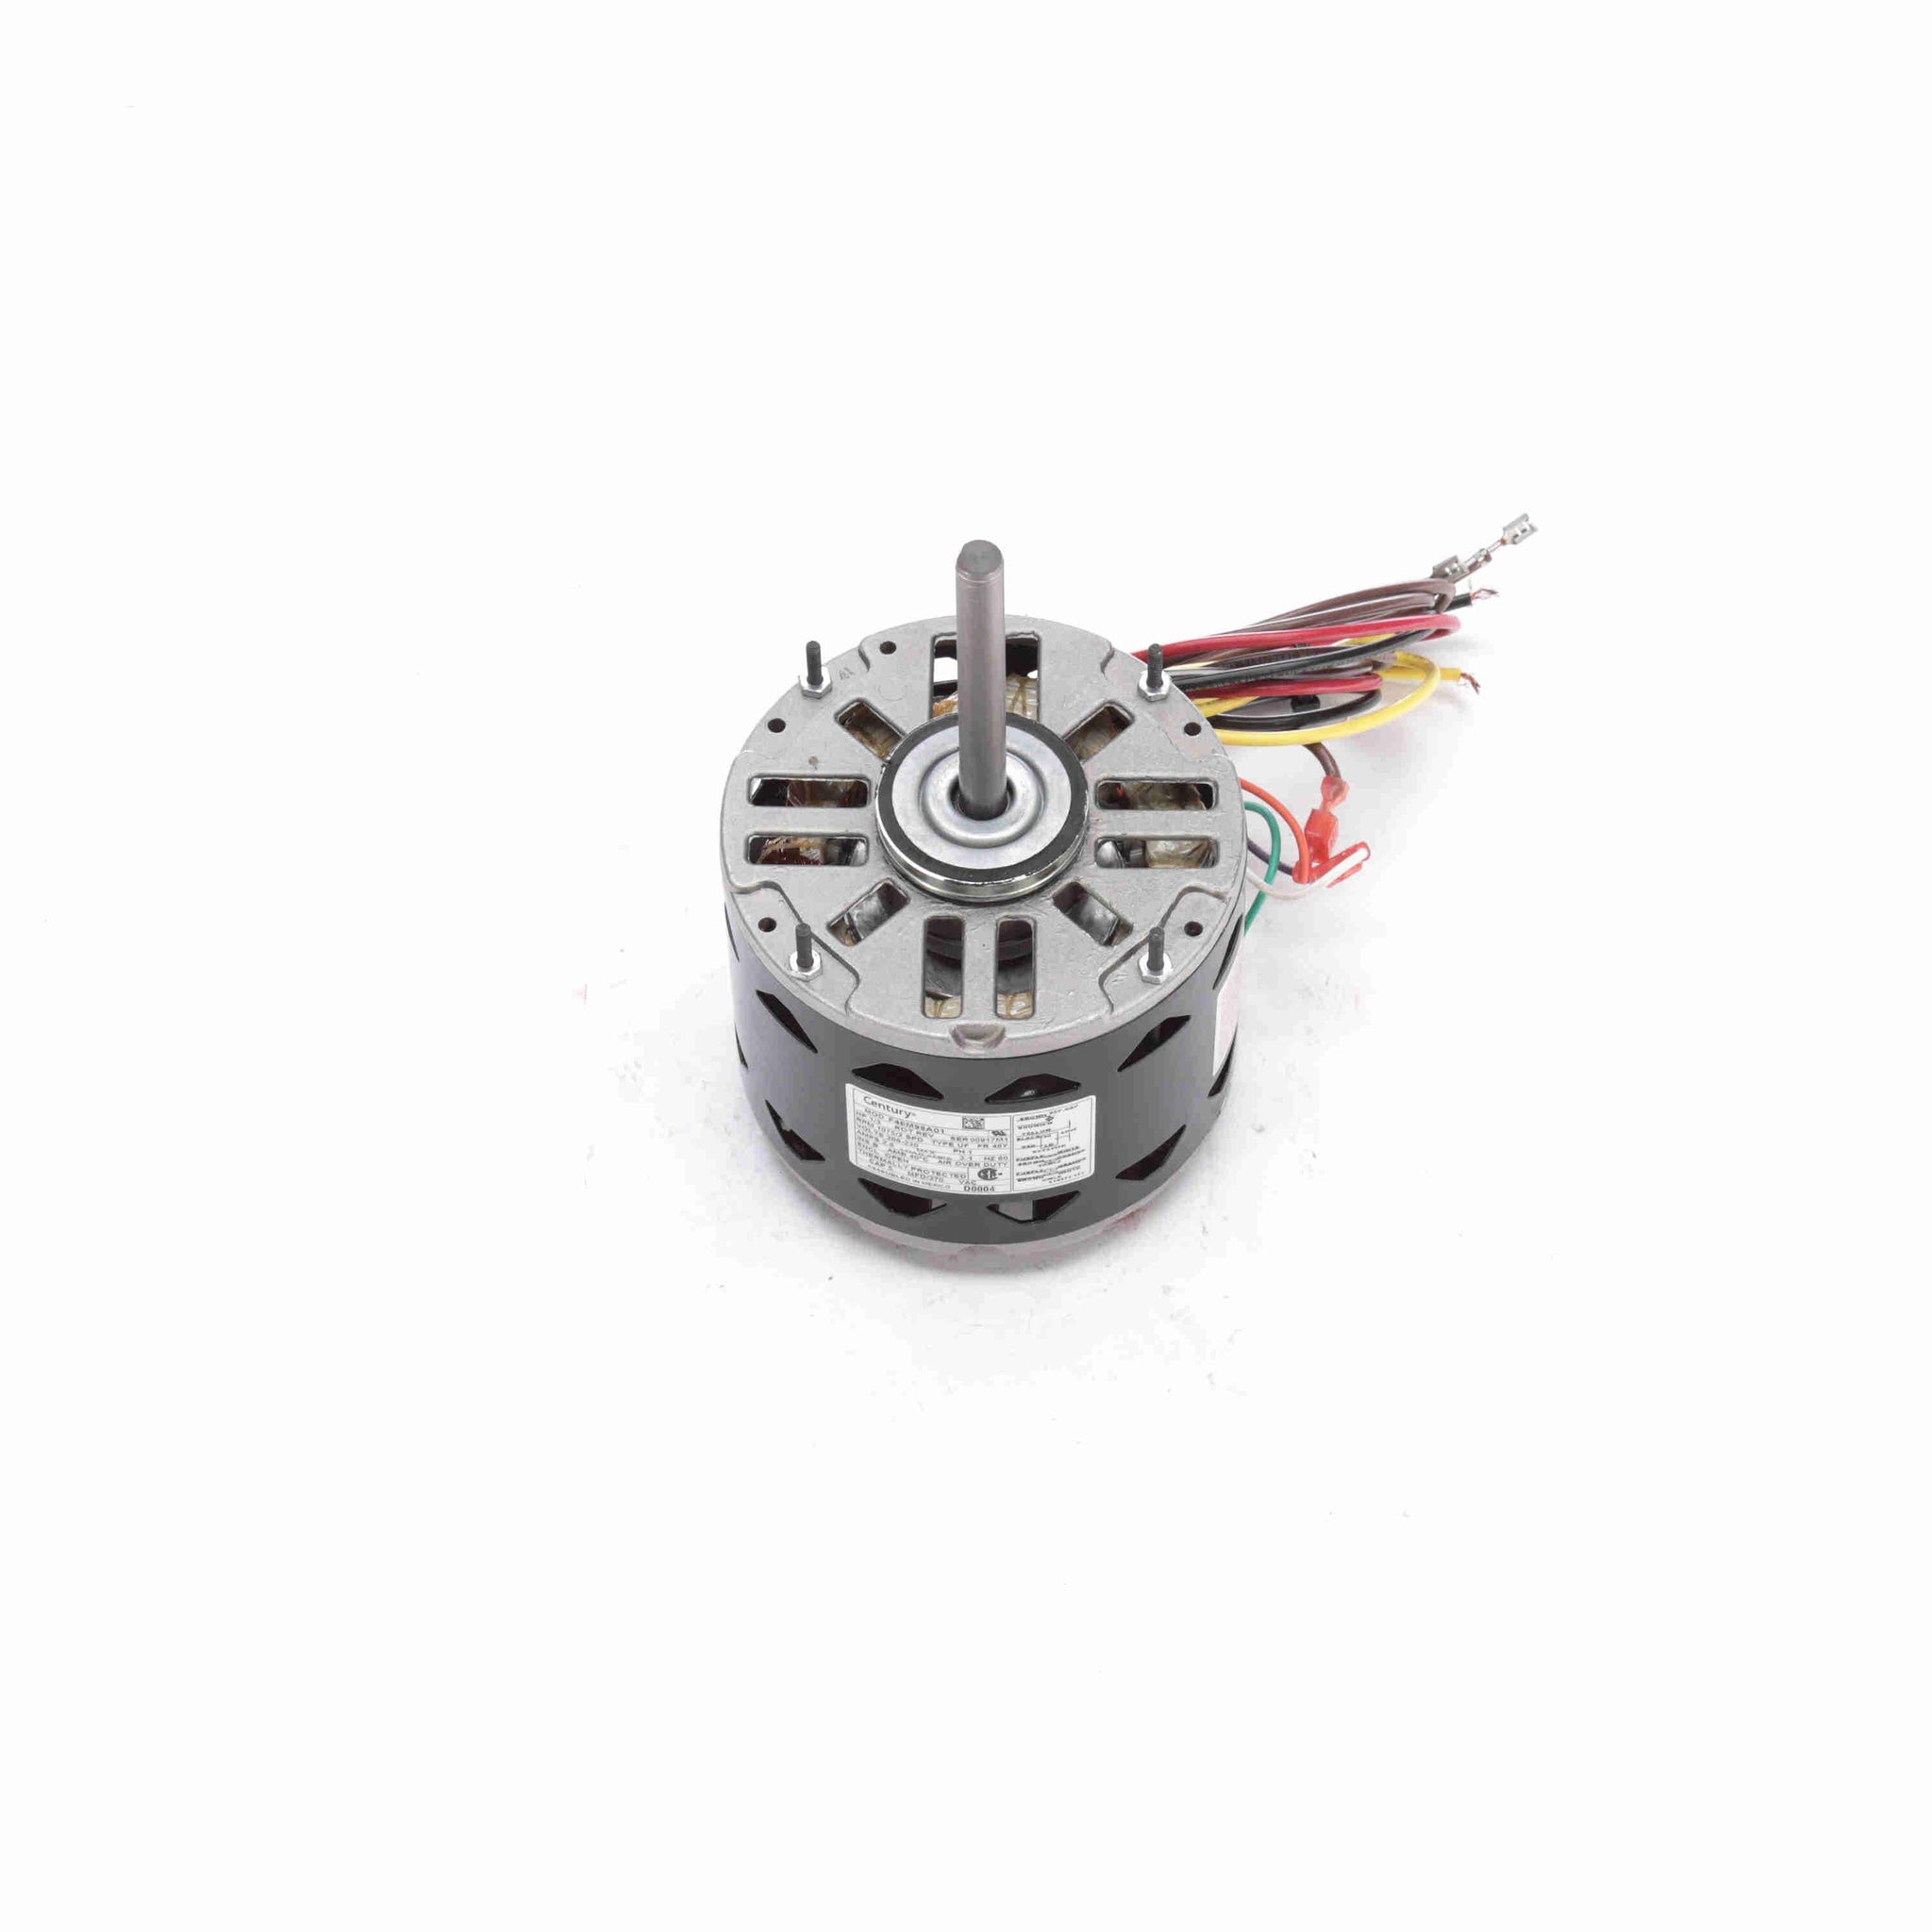 D0004 - 1/3 HP Fan & Blower Motor, 1075 RPM, 2 Speed, 208-230 Volts, 48 Frame, OAO - Hardware & Moreee